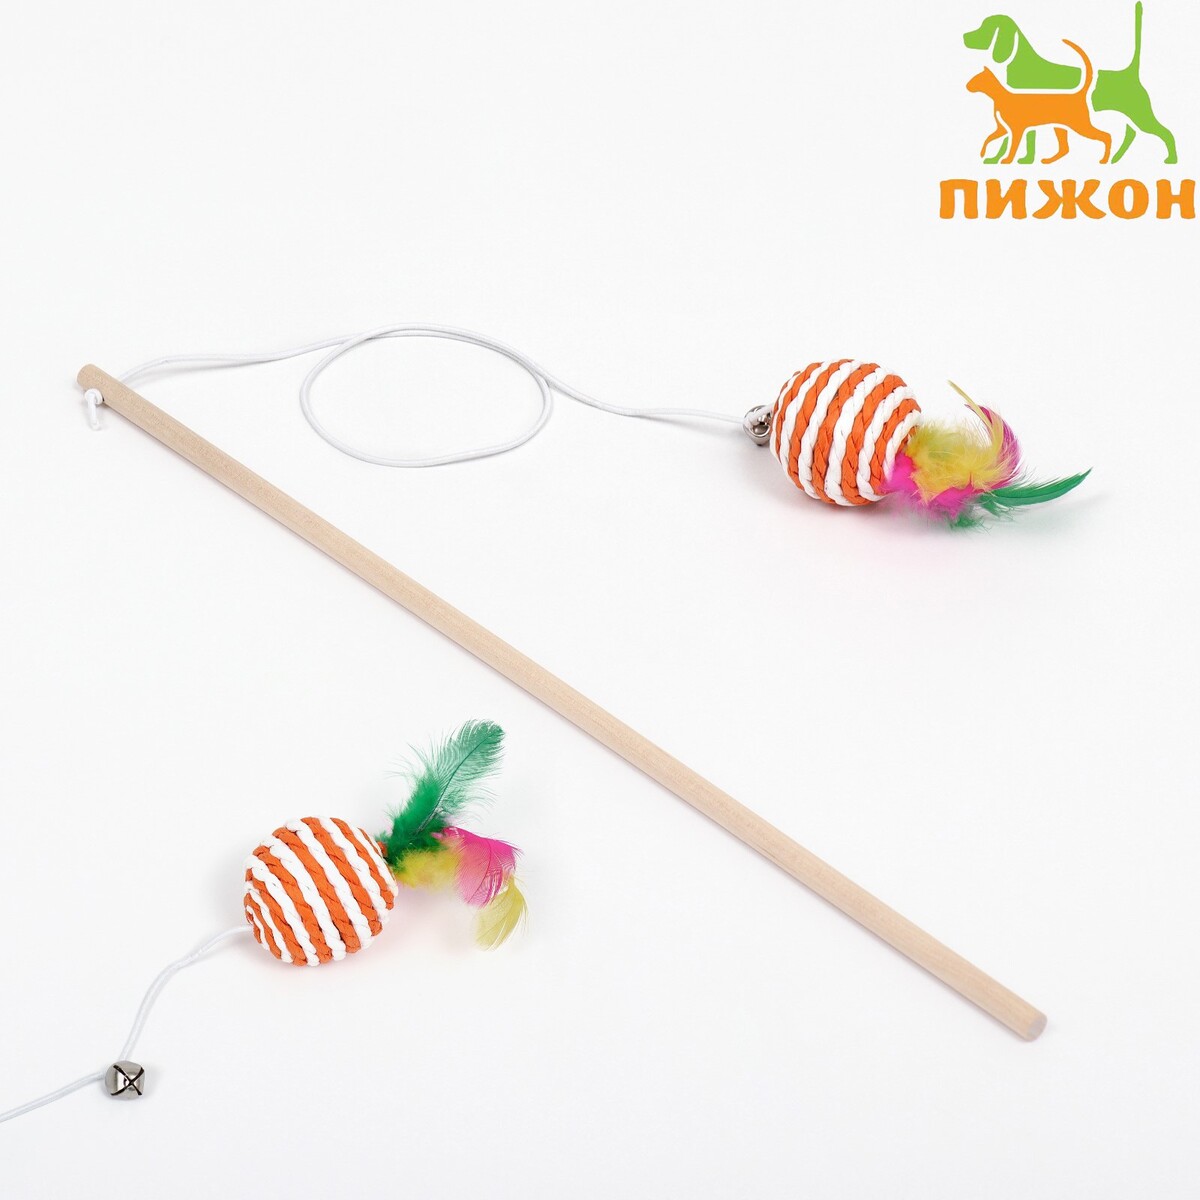 Дразнилка-удочка с плетеным шариком и цветными перьями на деревянной ручке, оранжевый дразнилка с мышкой 7 см на деревянной палочке 40 см желтая белая